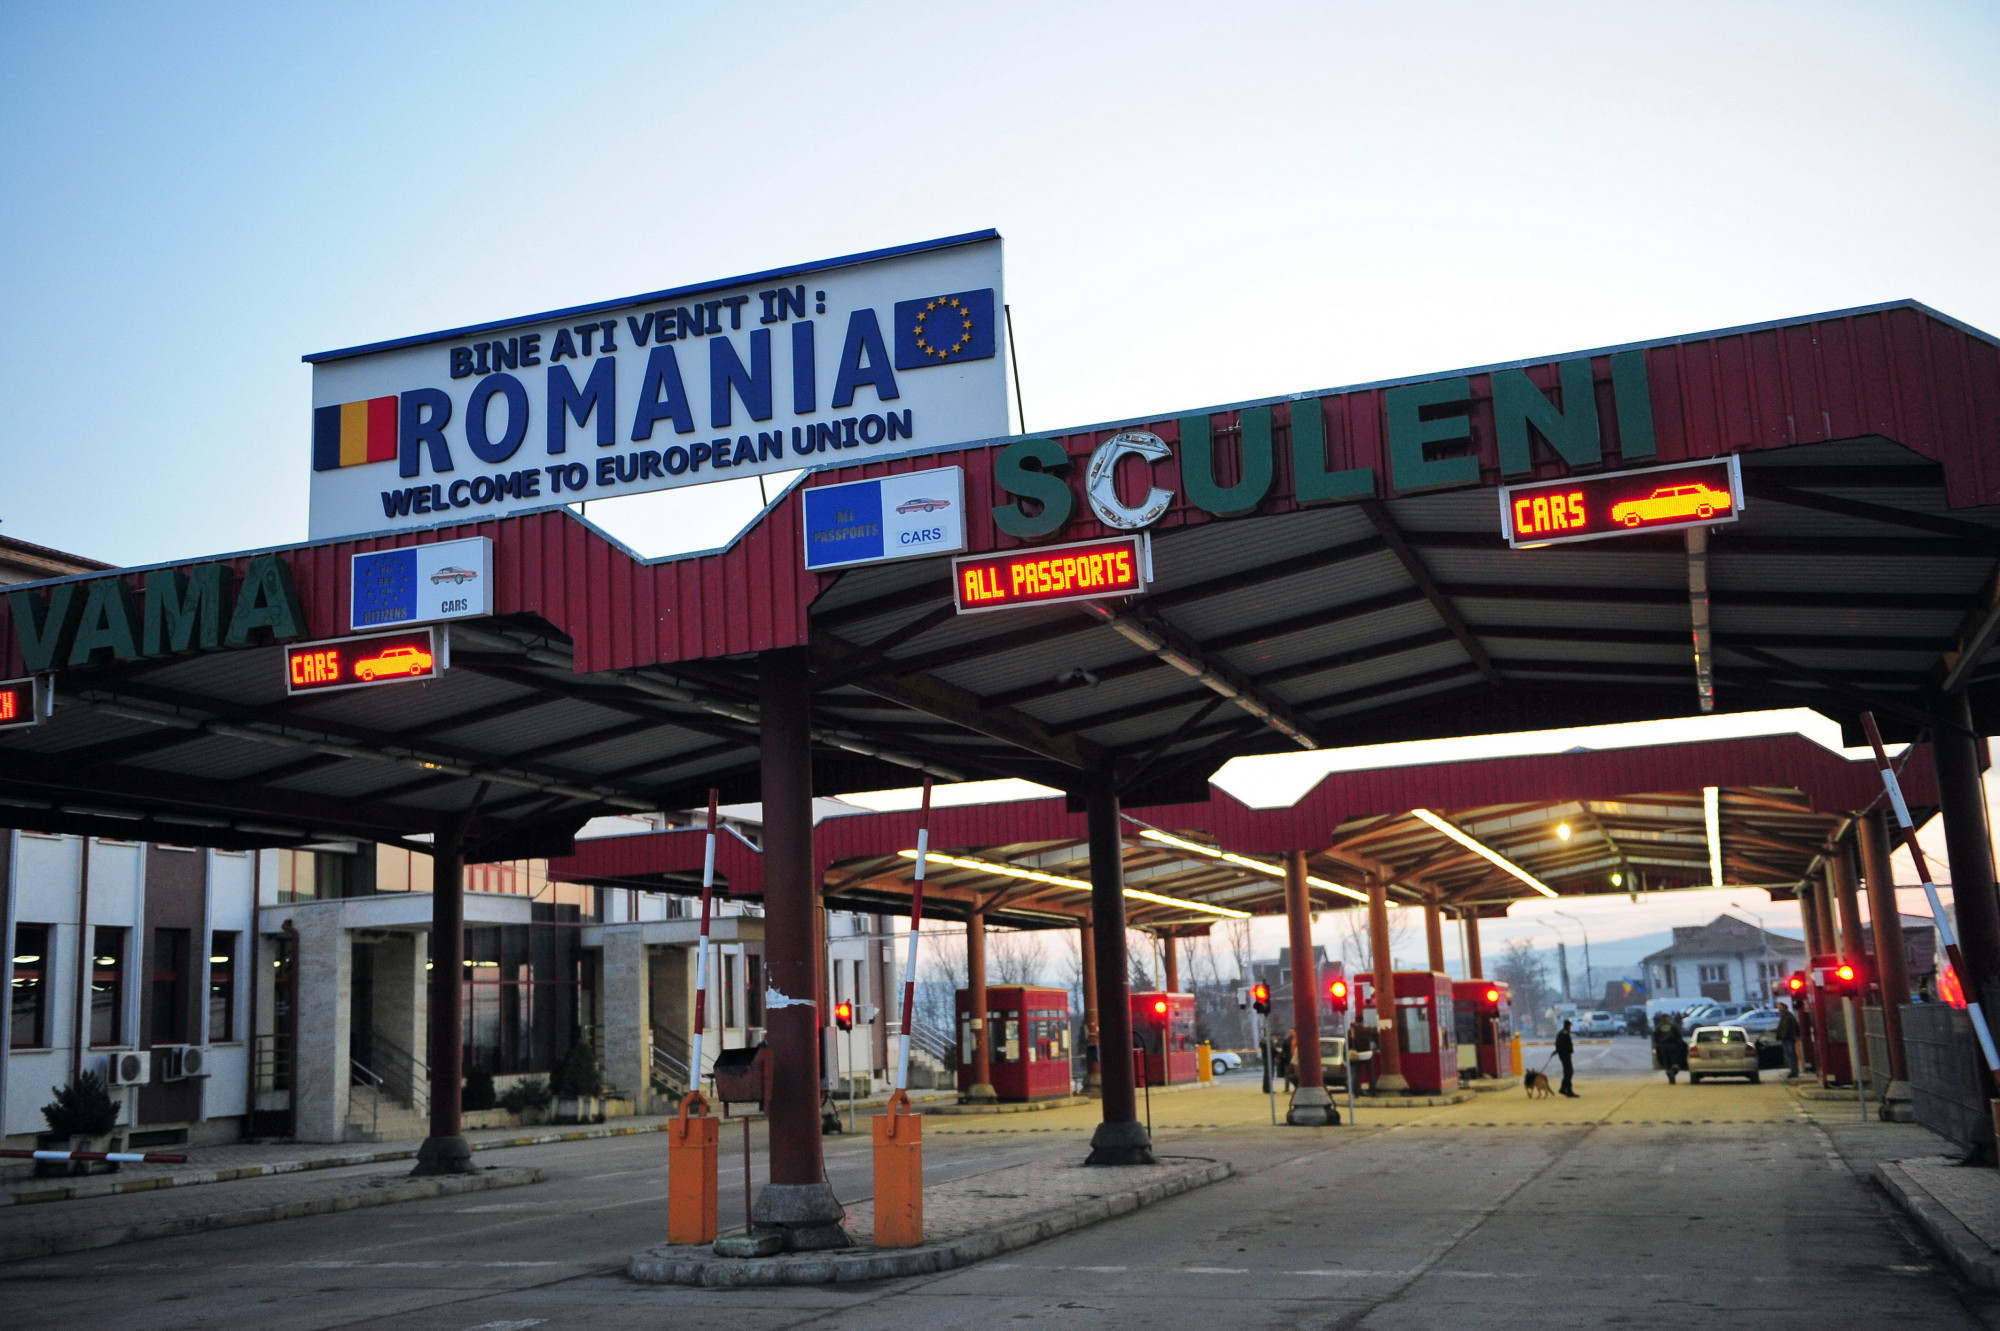 Bulgária és Románia márciusban csatlakozik a schengeni övezethez